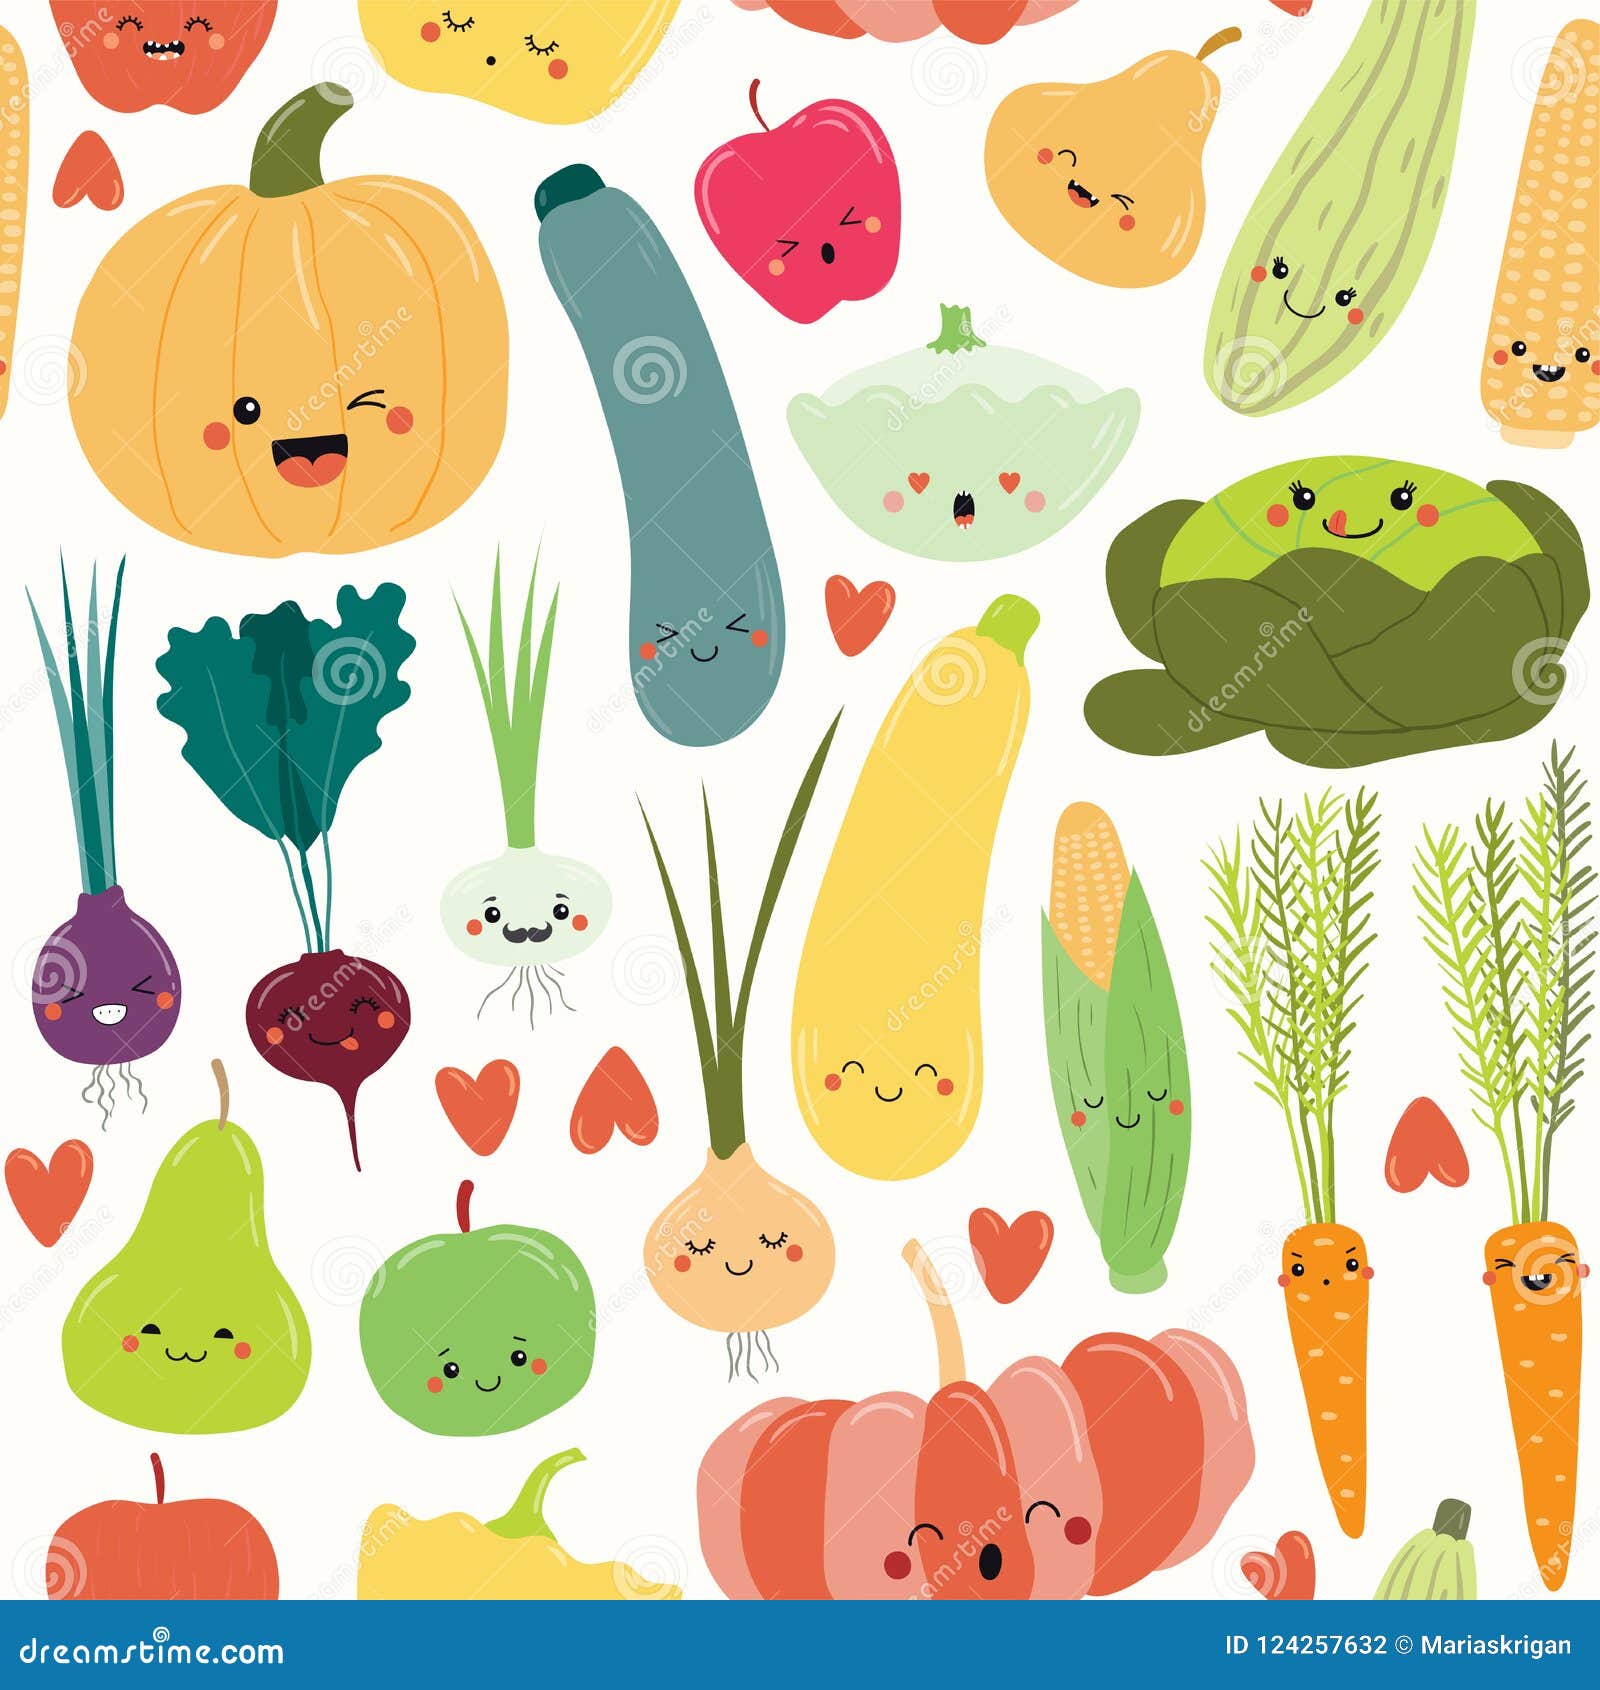 Itadakimasu Anime! | Japanese food illustration, Cute food drawings, Cute  food art